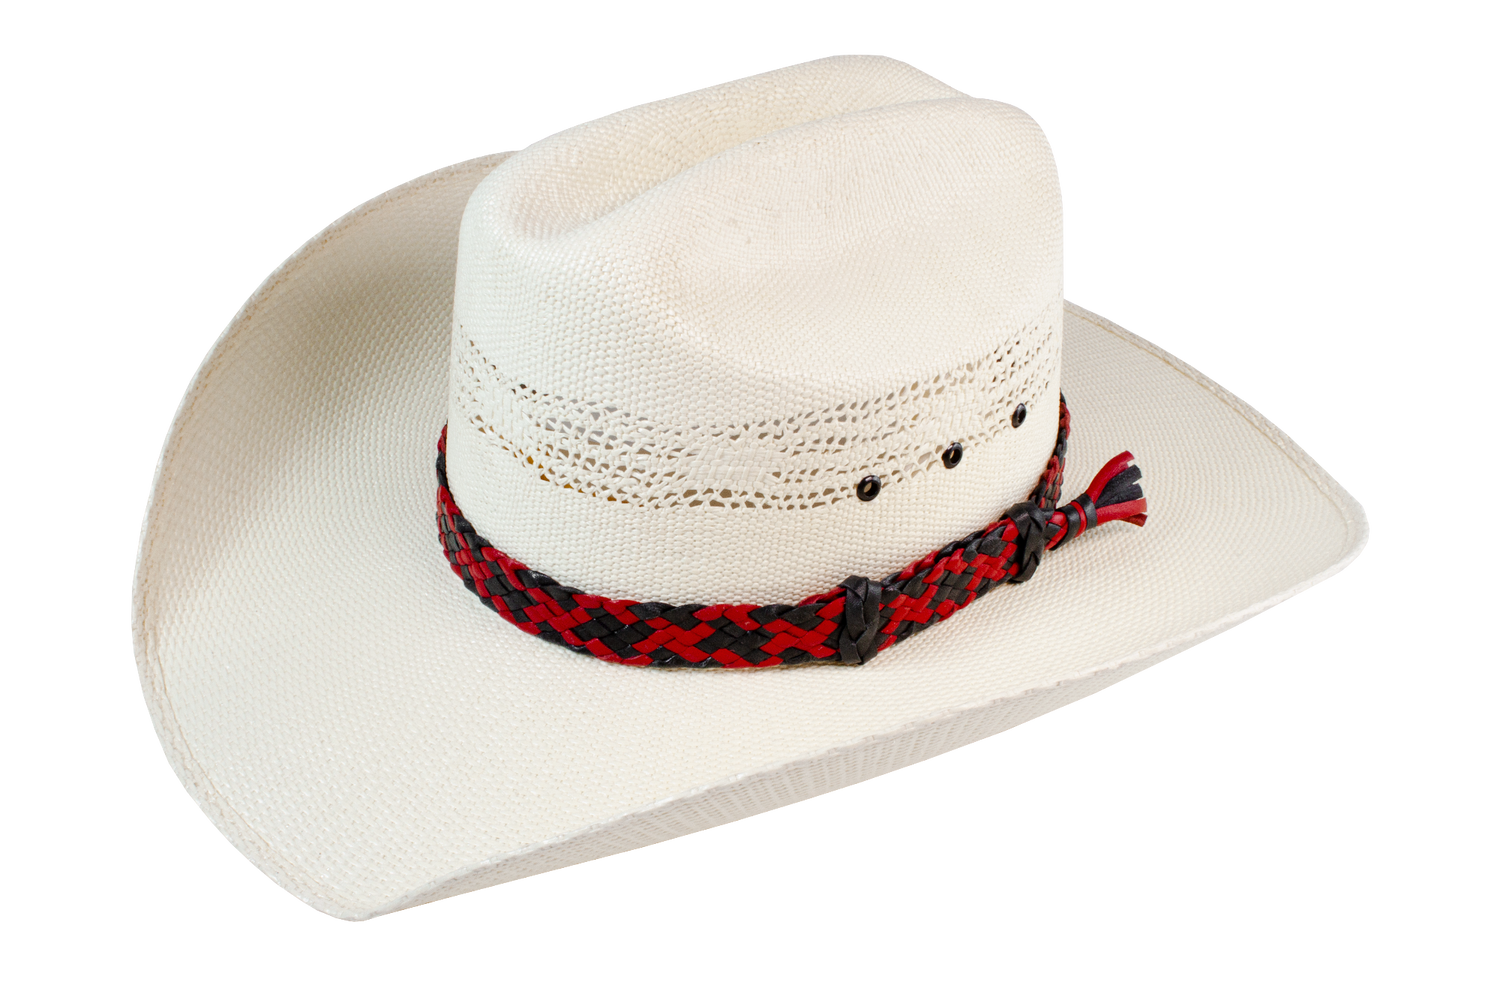 Sydney - Kangaroo Leather Hat Band - 8 Plait Flat Leather Red/Black